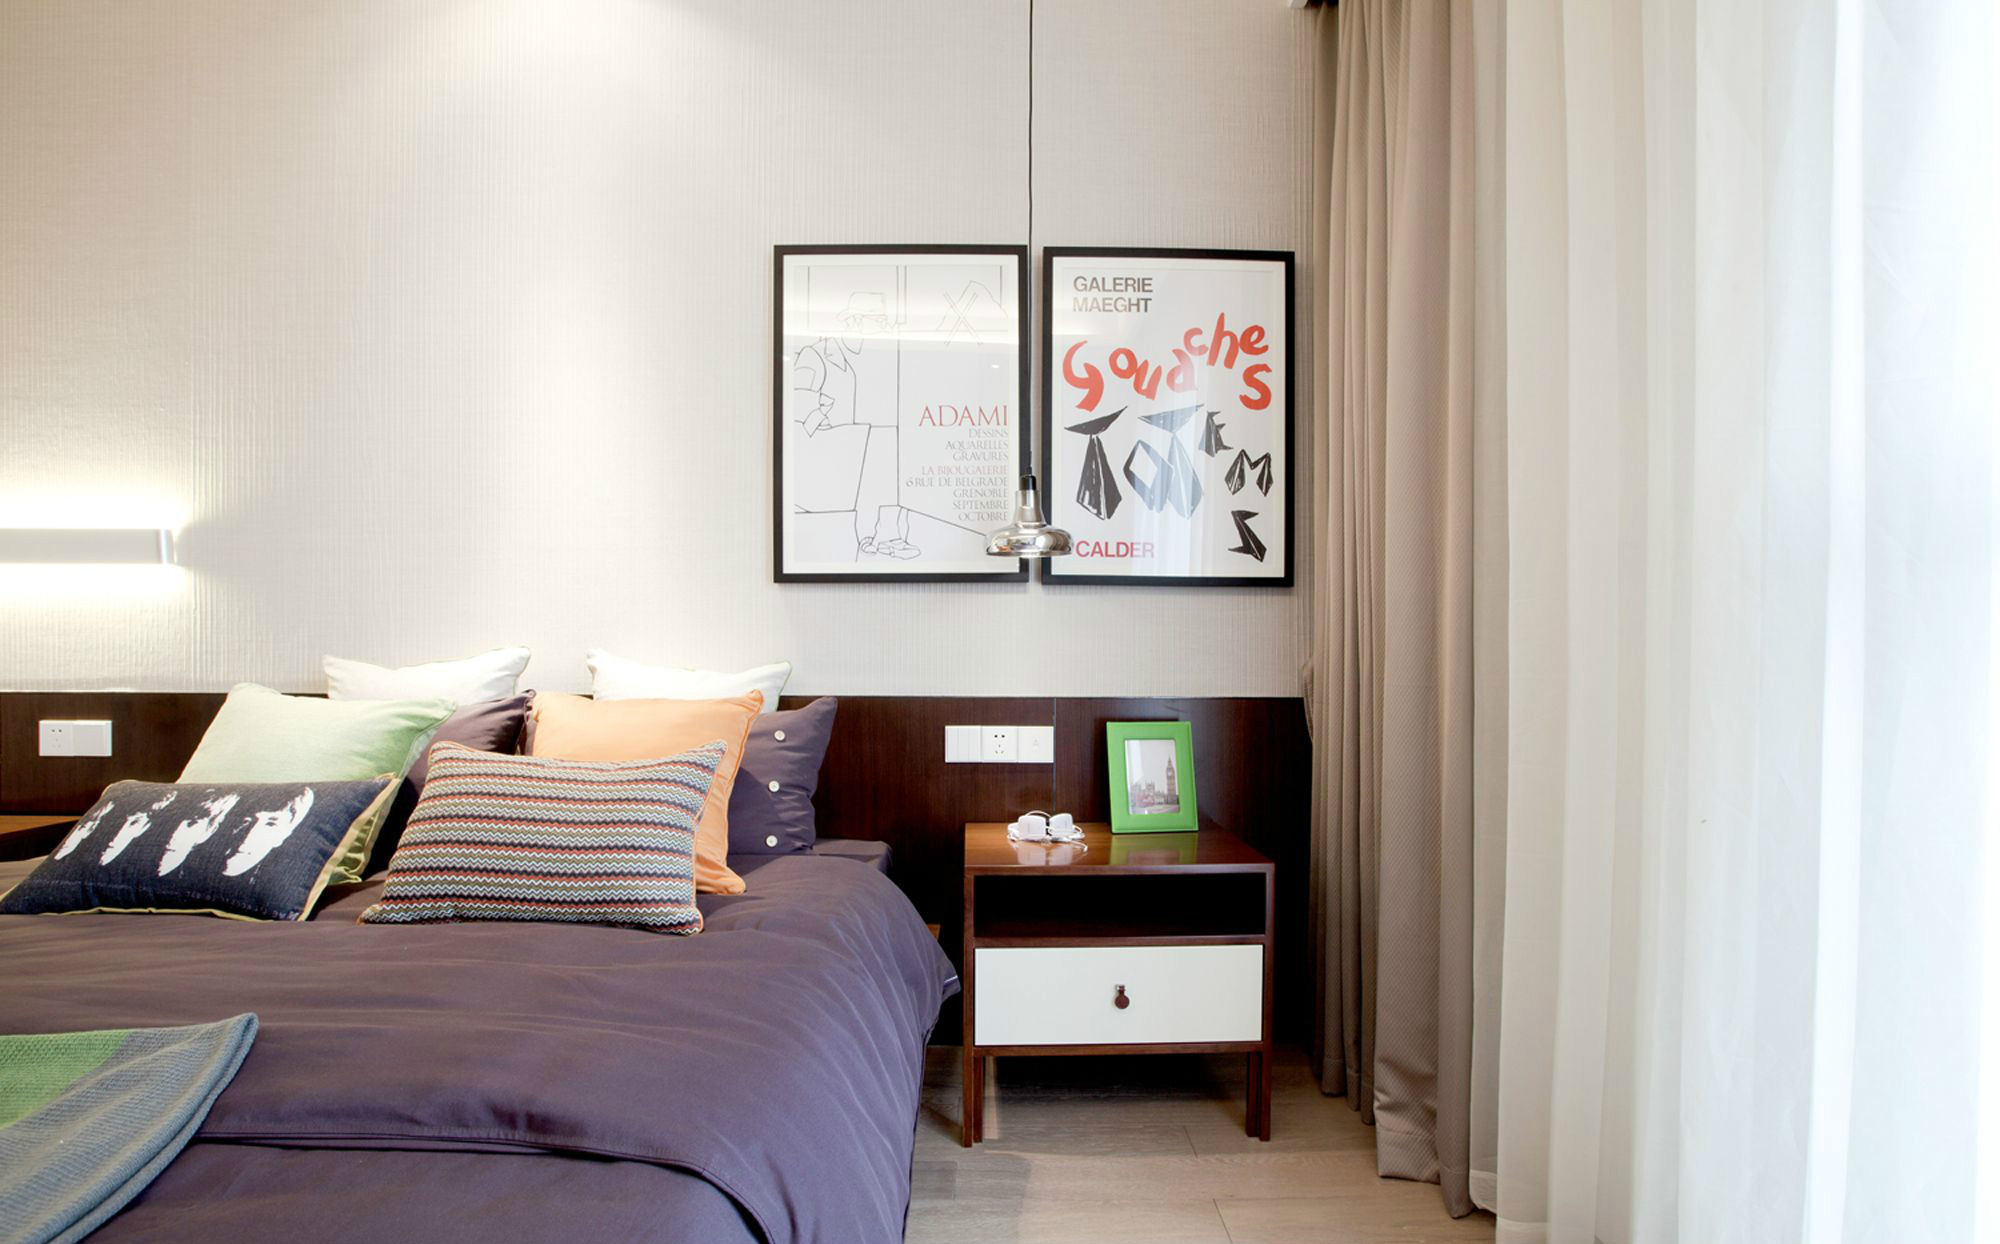 侧卧舒适又温馨，紫色床品凸显出优雅的气息，床头垂吊灯渲染温馨氛围。 